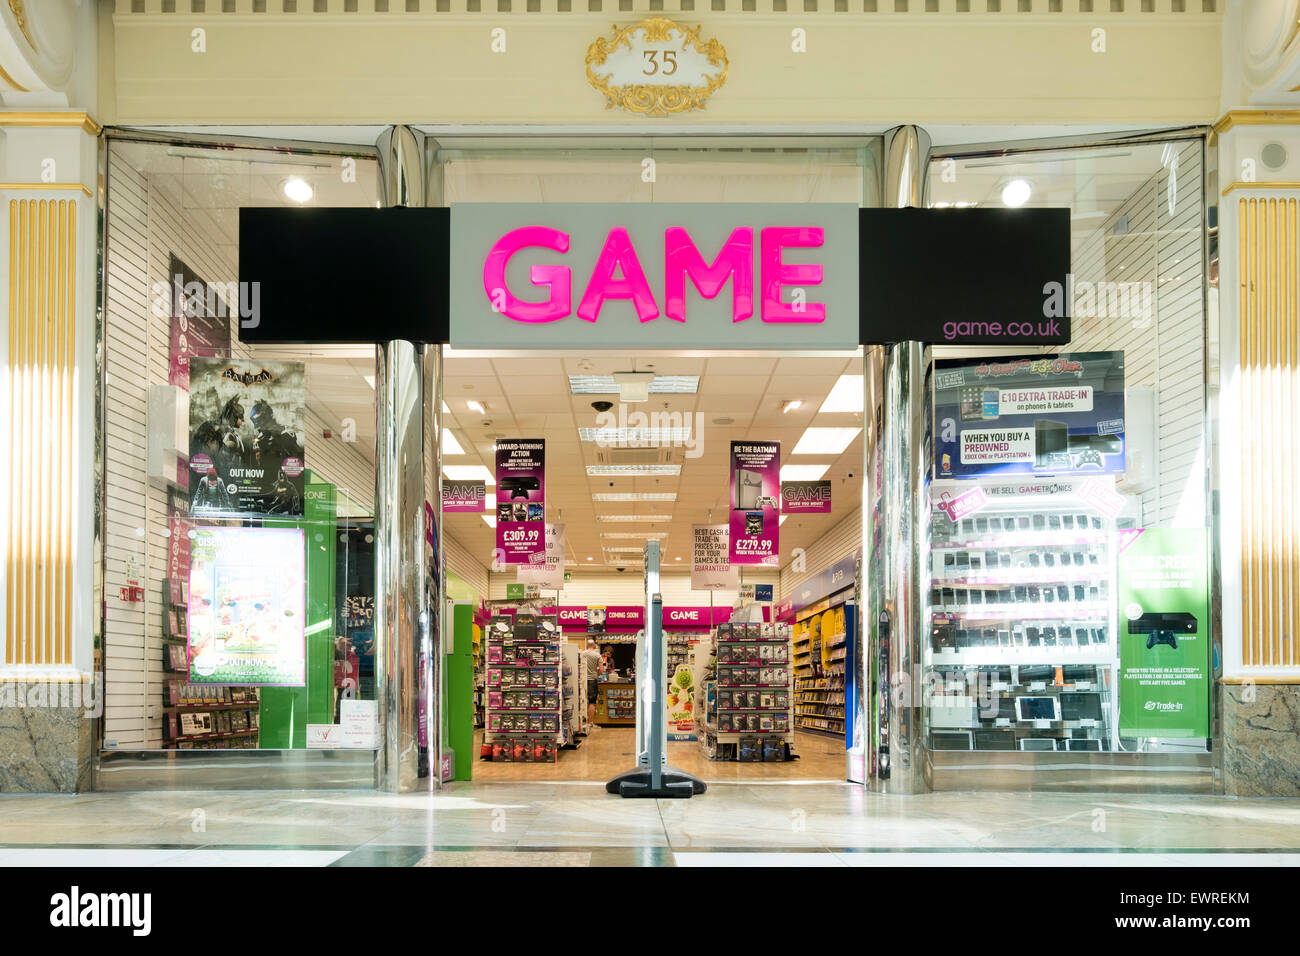 Game store, UK. Stock Photo